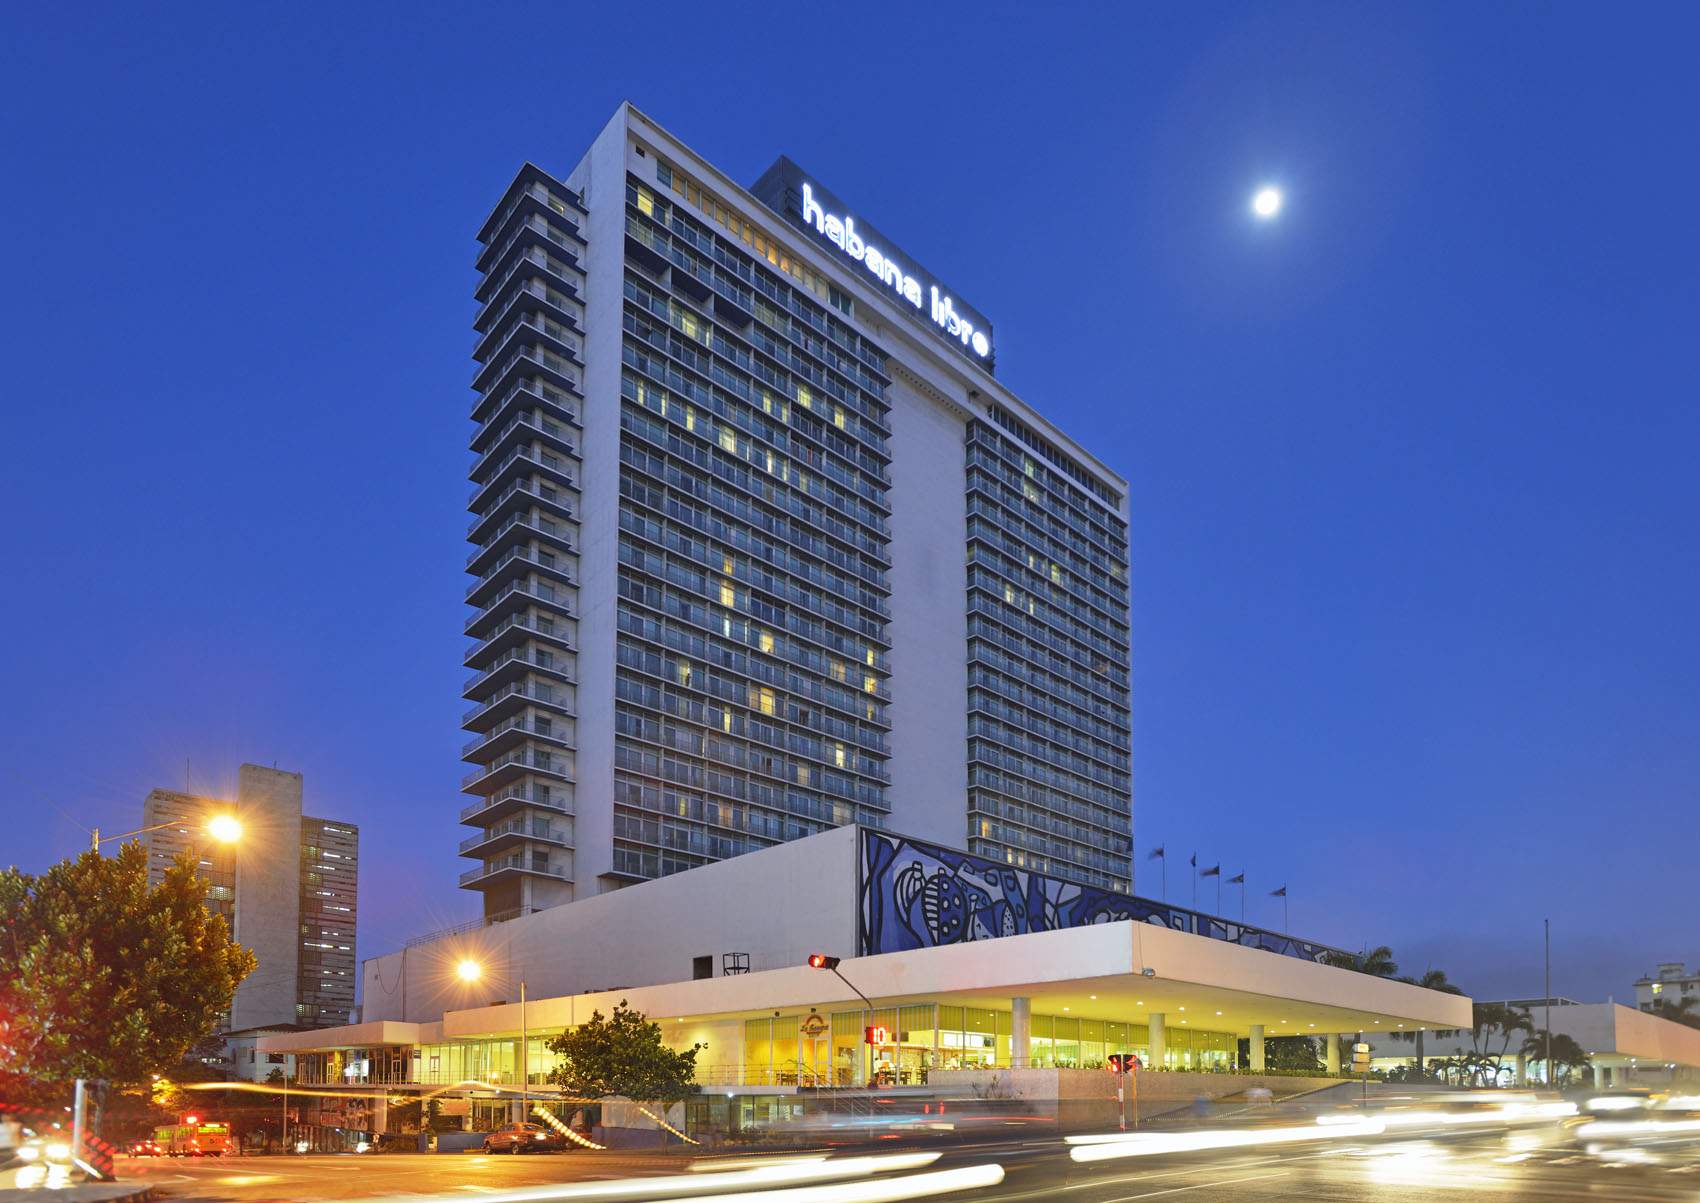 Hotel Habana Libre will function as headquarter for Marabana